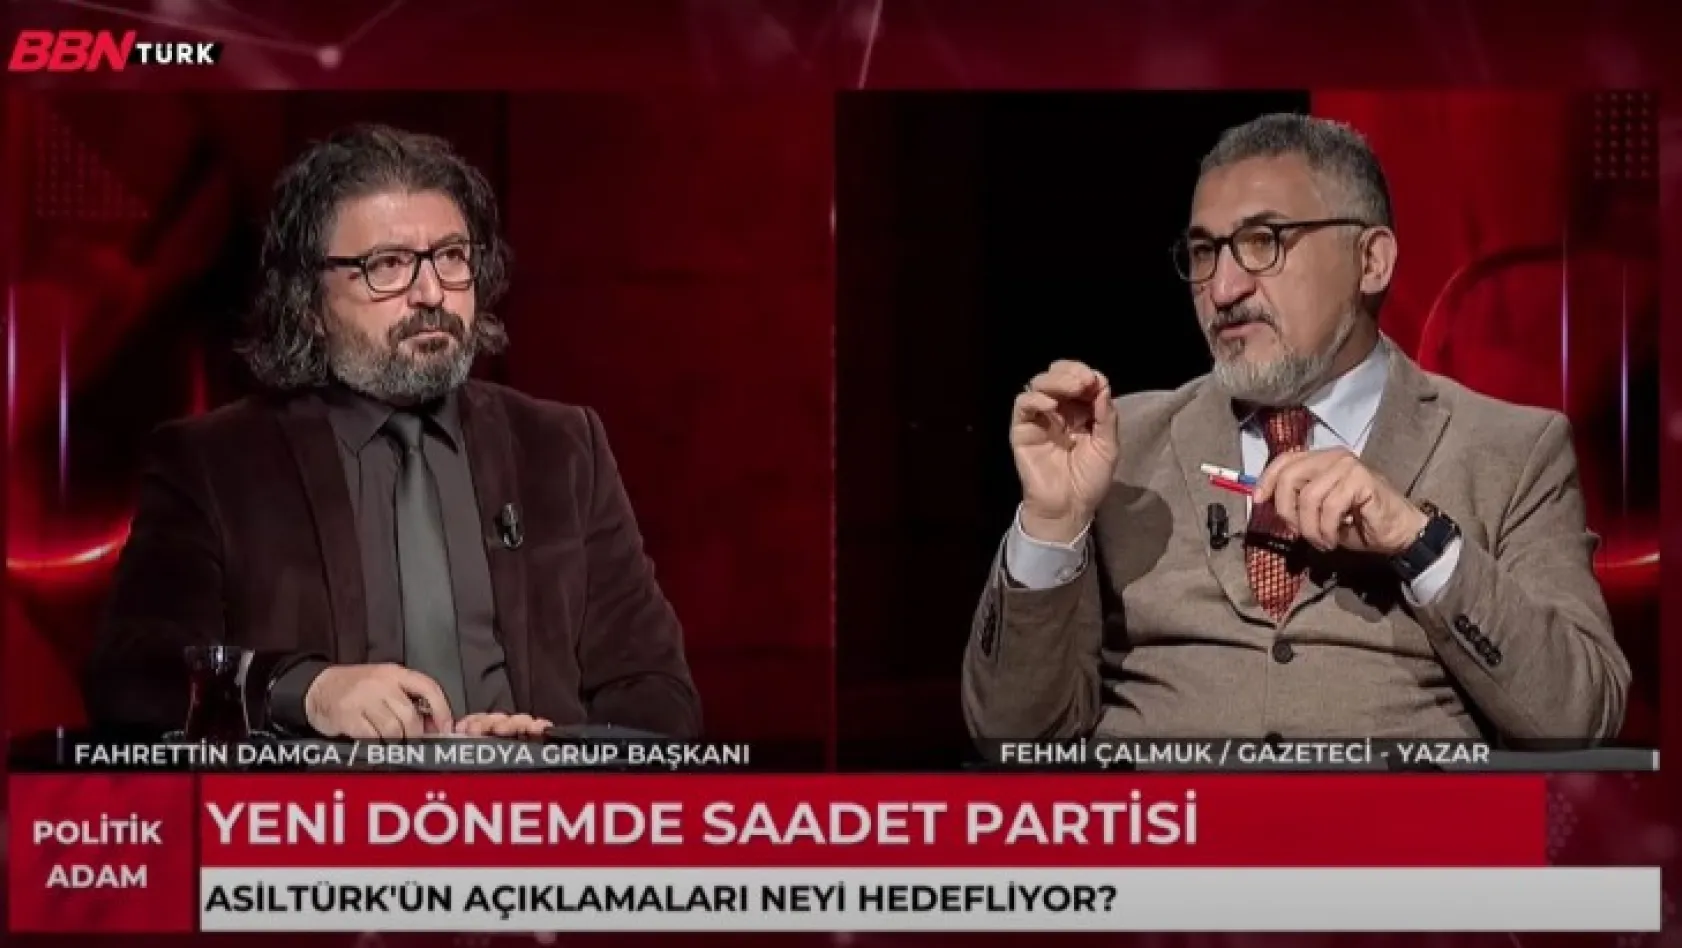 Politik Adam Farkıyla Oğuzhan Asiltürk'ün Açıklamalarının Şifreleri